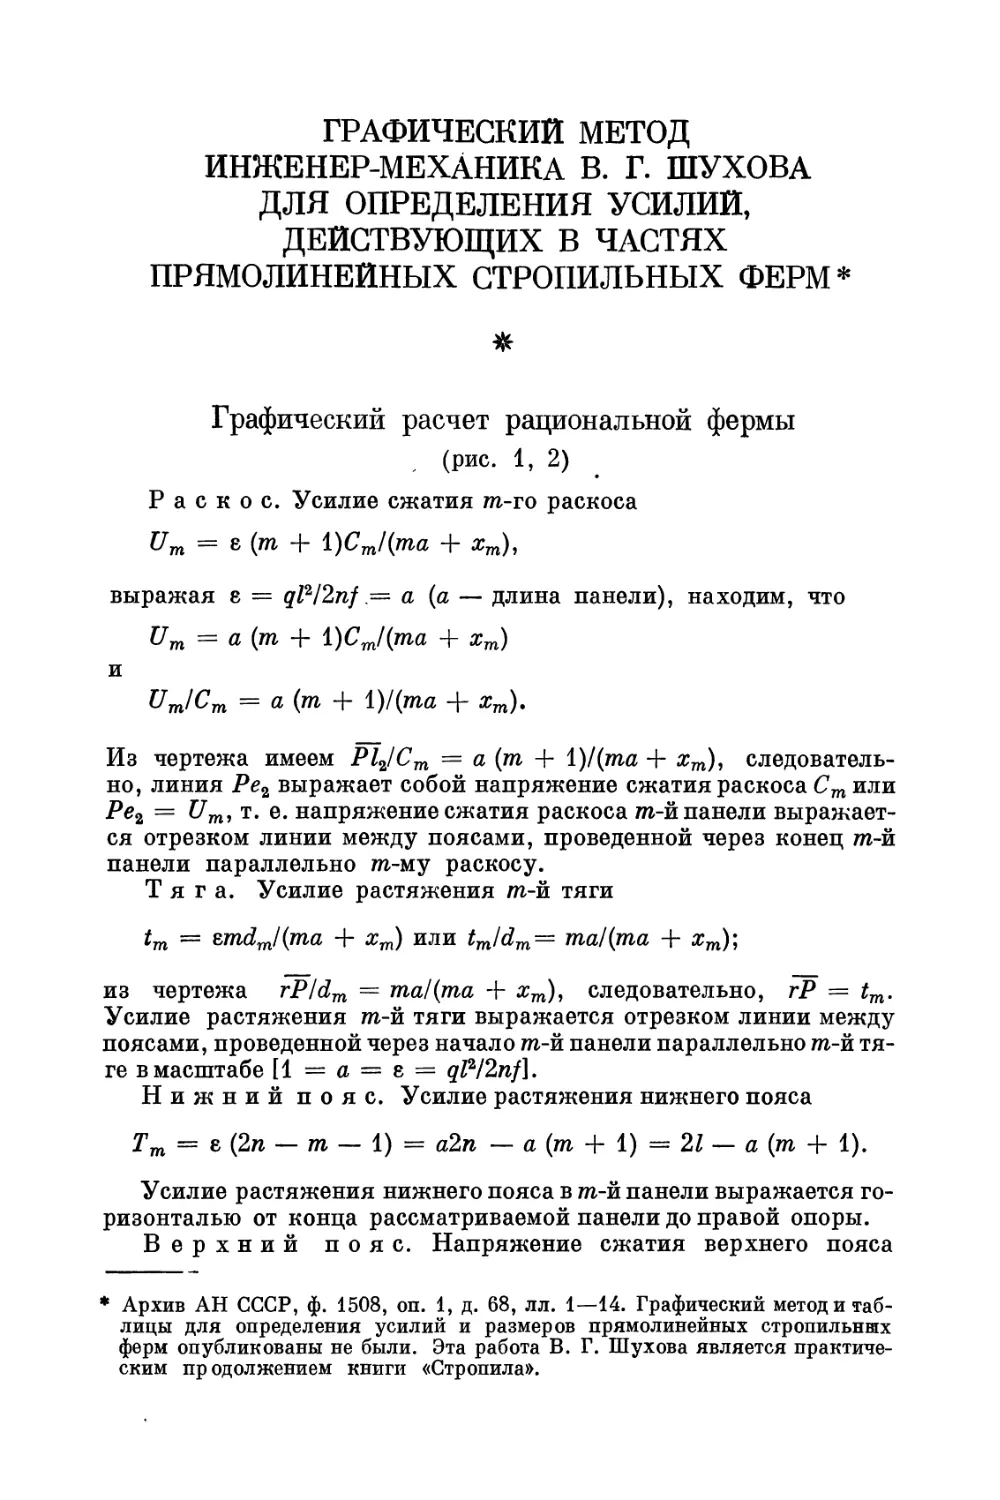 Графический метод инженер-механика В. Г. Шухова для определения усилий, действующих в частях прямолинейных стропильных ферм